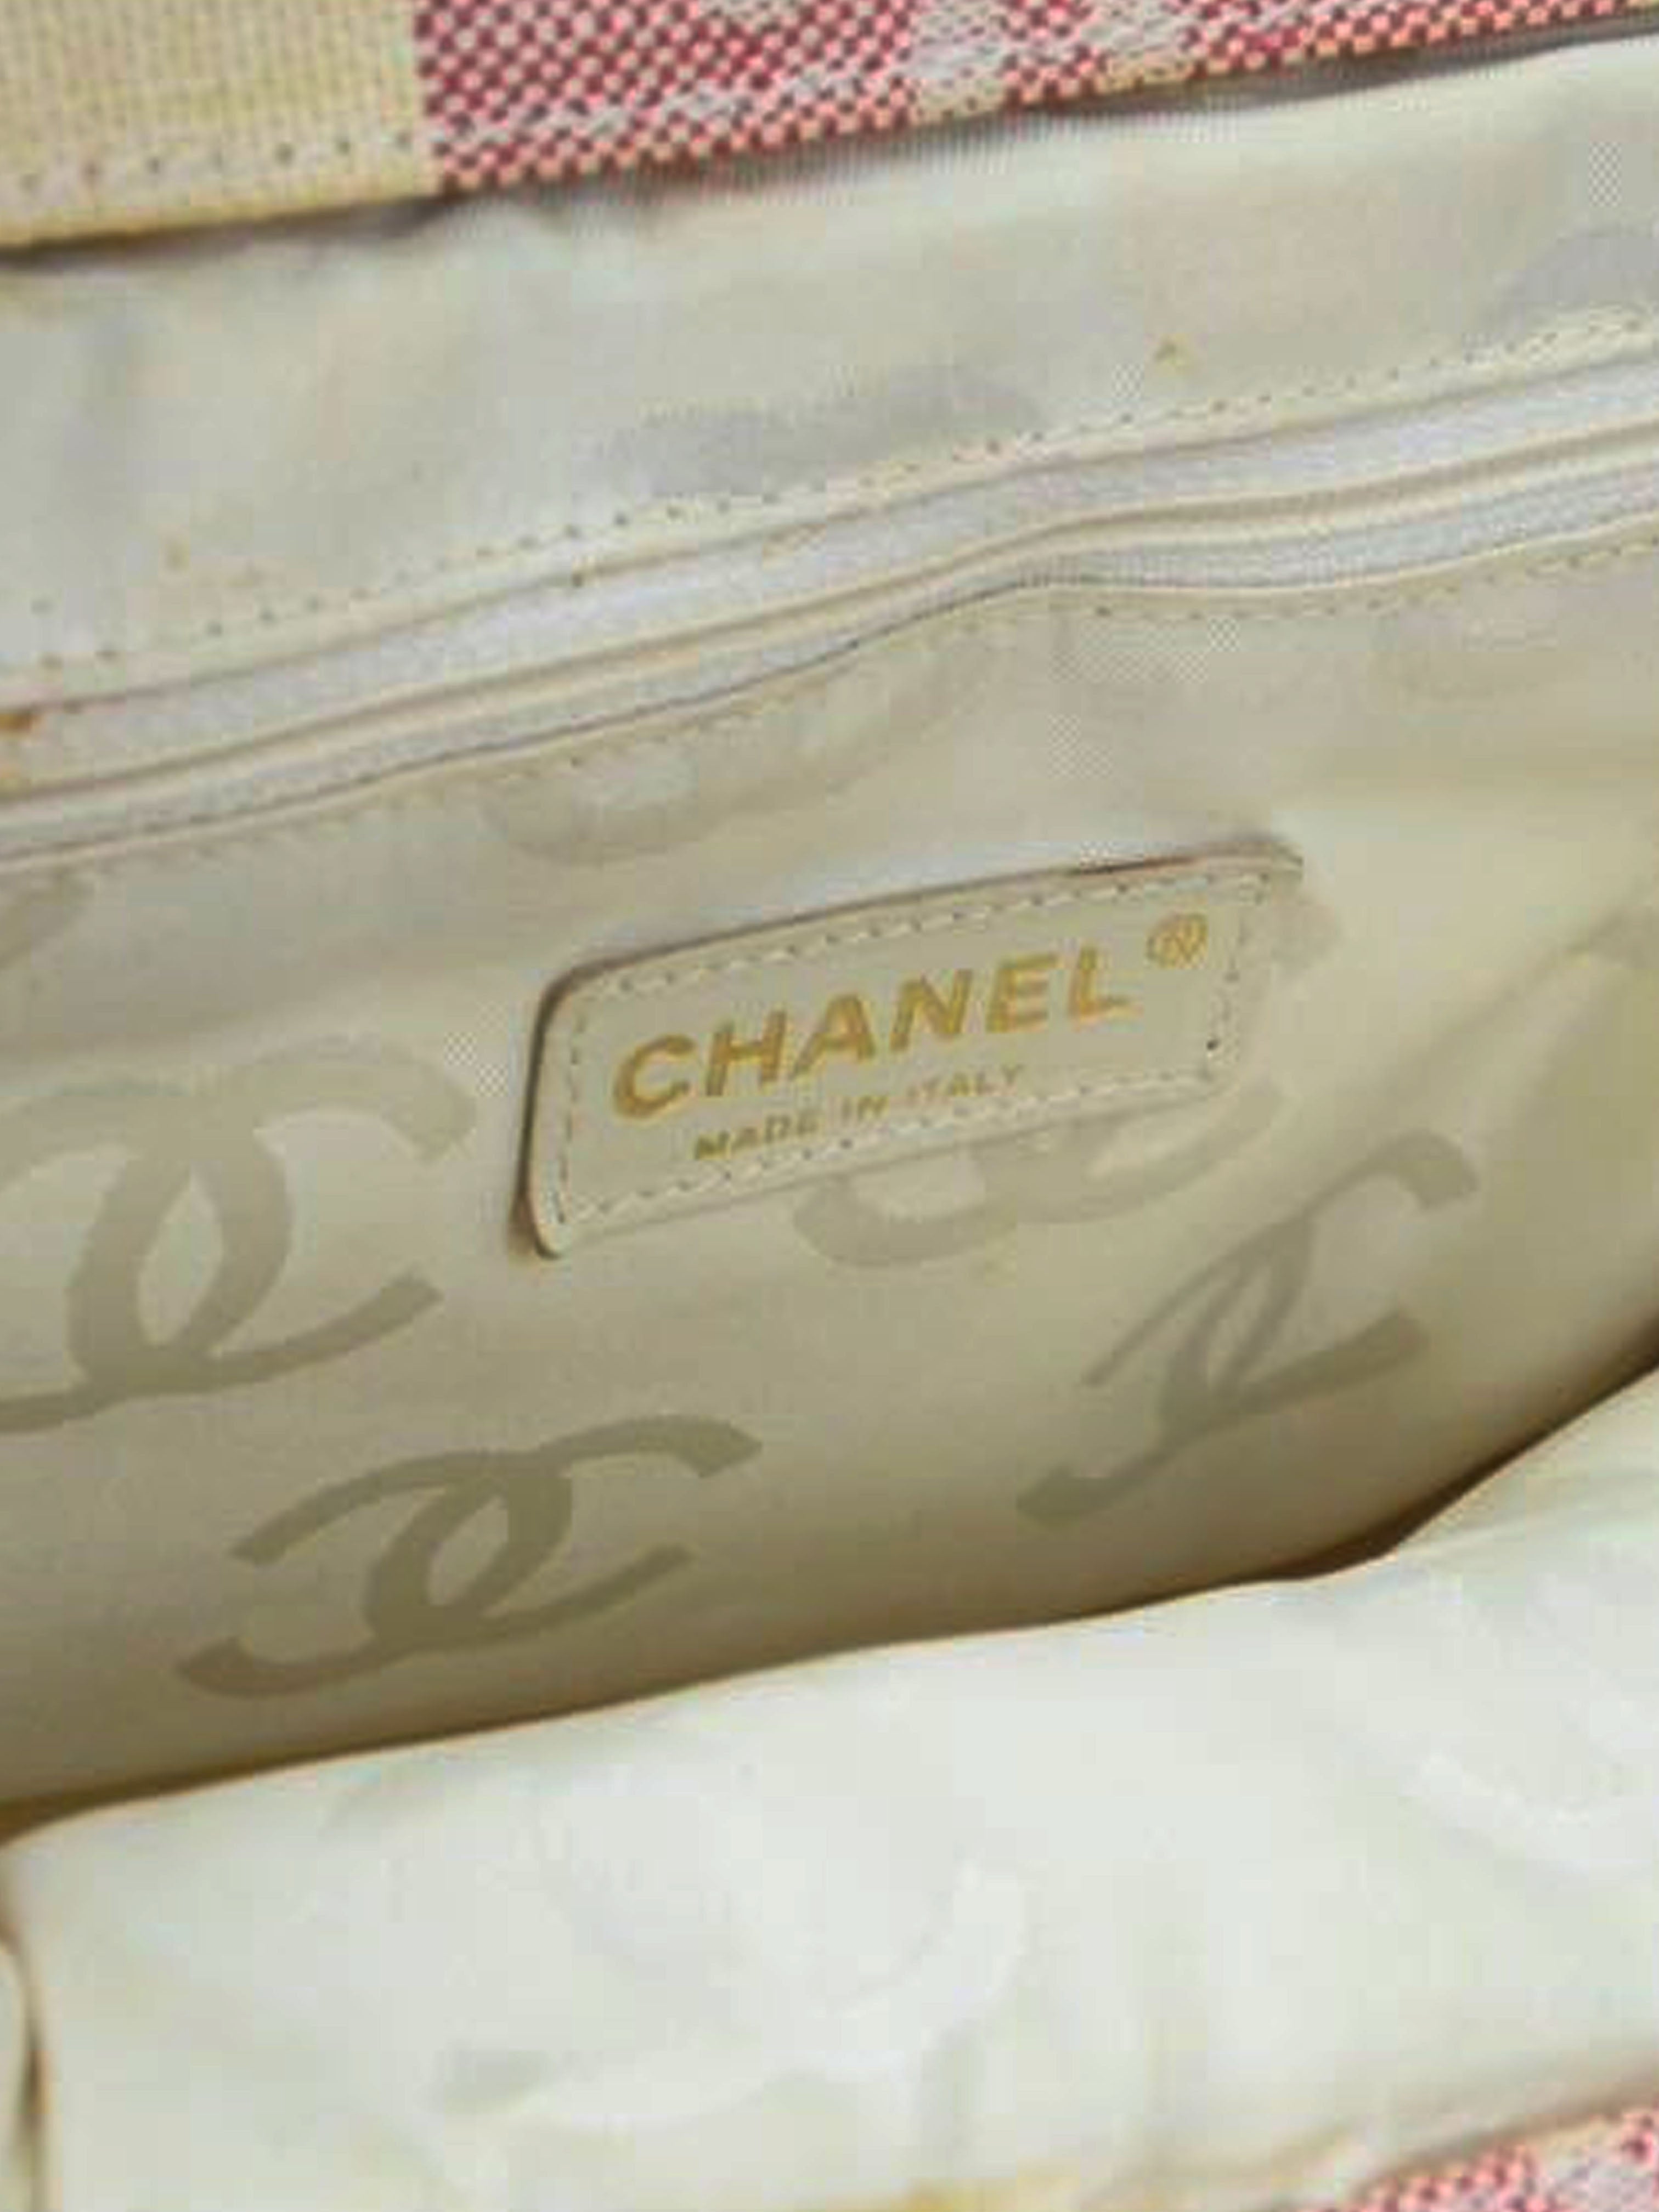 Chanel bag 2004/2005